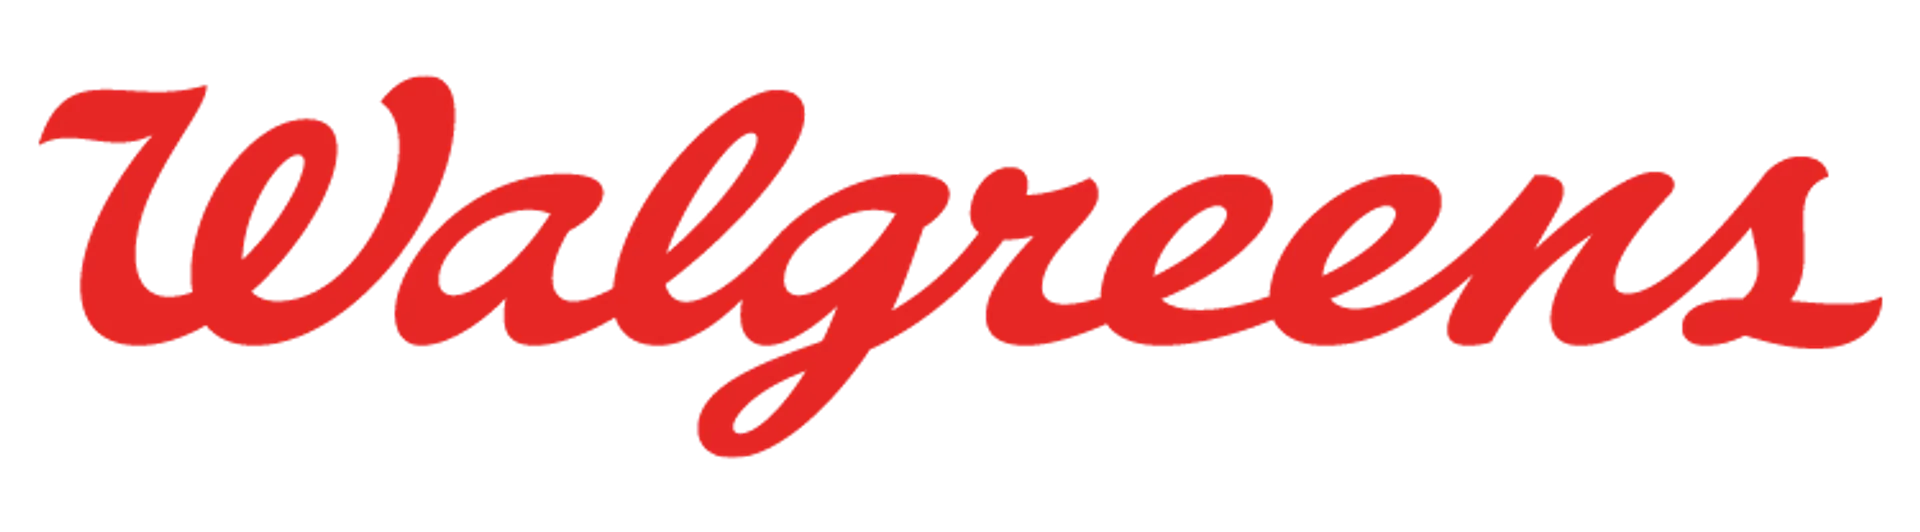 WALGREENS logo de catálogo